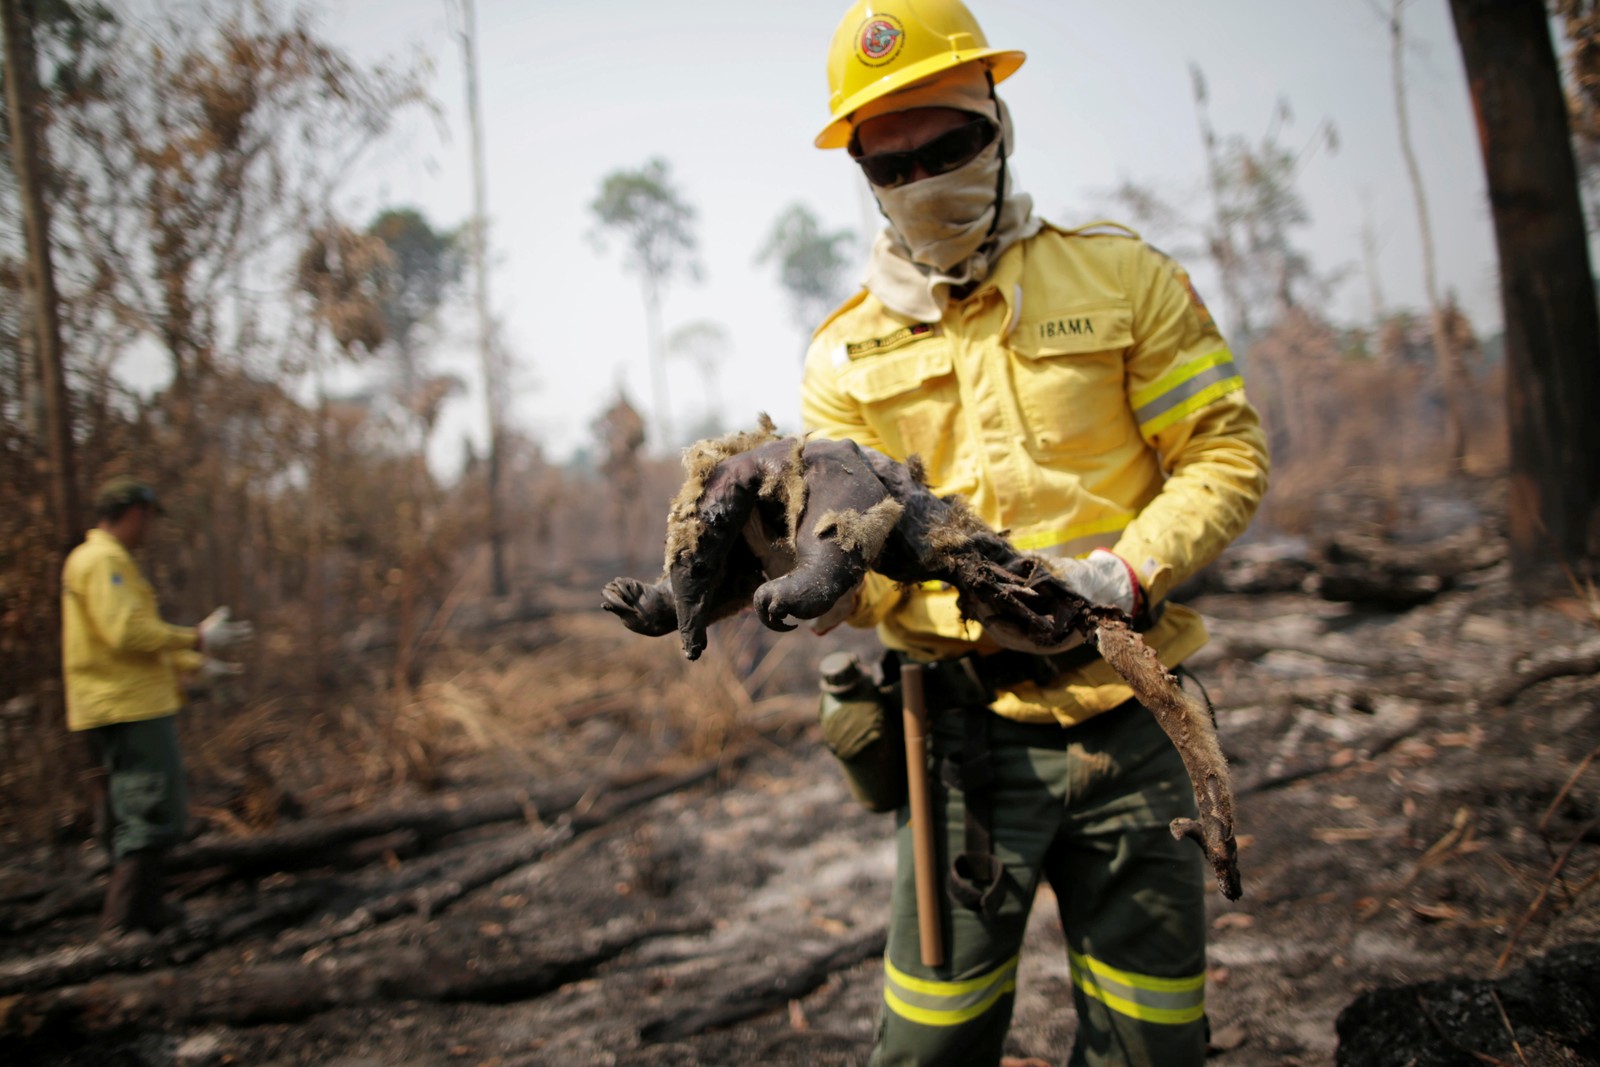 Membro da brigada de incêndio do Instituto Brasileiro do Meio Ambiente e dos Recursos Naturais Renováveis (Ibama) encontra tamanduá morto enquanto tentava controlar focos de incêndios, em uma área da selva amazônica perto de Apuí, no AmazonasREUTERS